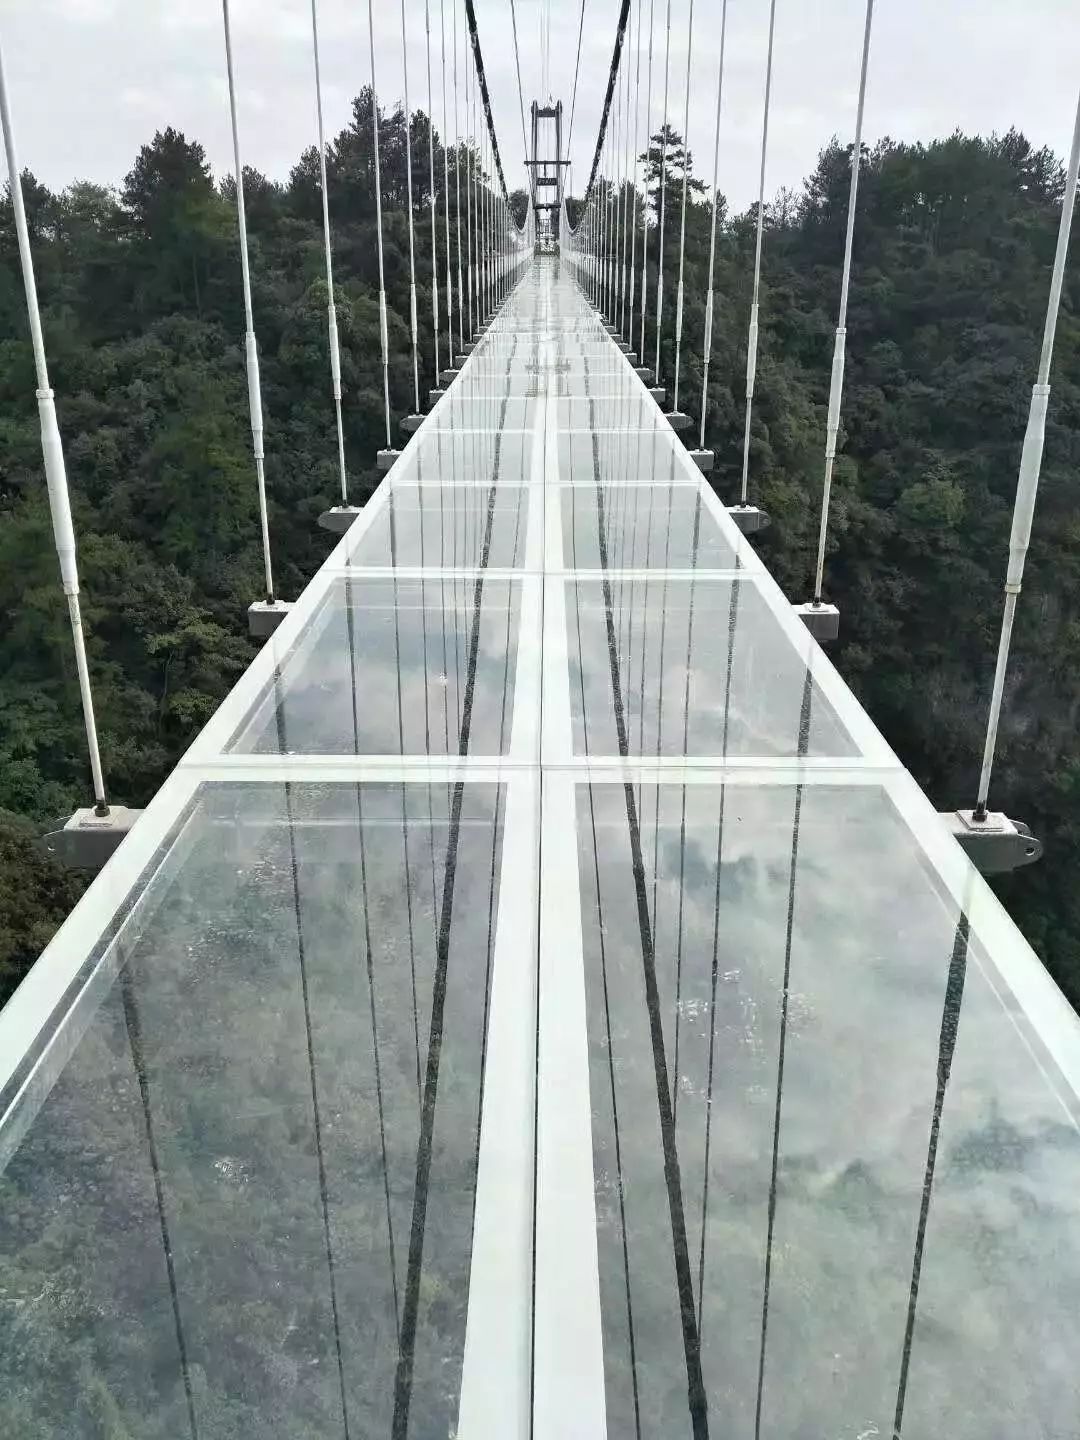 梅岭太阳谷玻璃桥图片